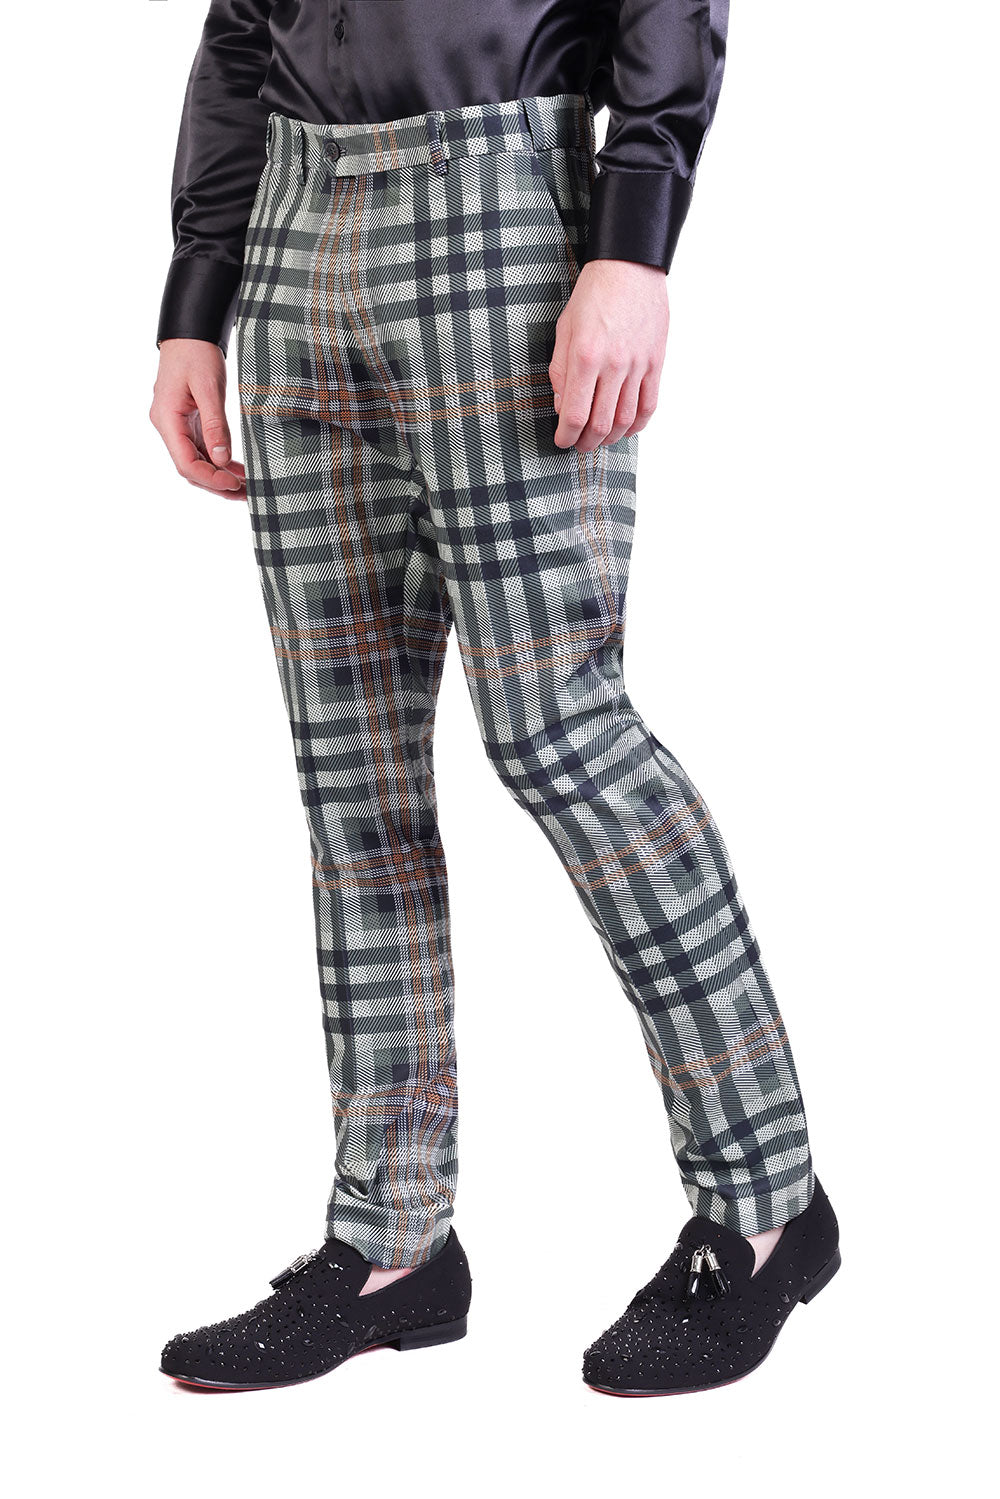 Barabas Men's Luxury Plaid Checkered Chino Dress Slim Pants CP201 Cream Green Hunter